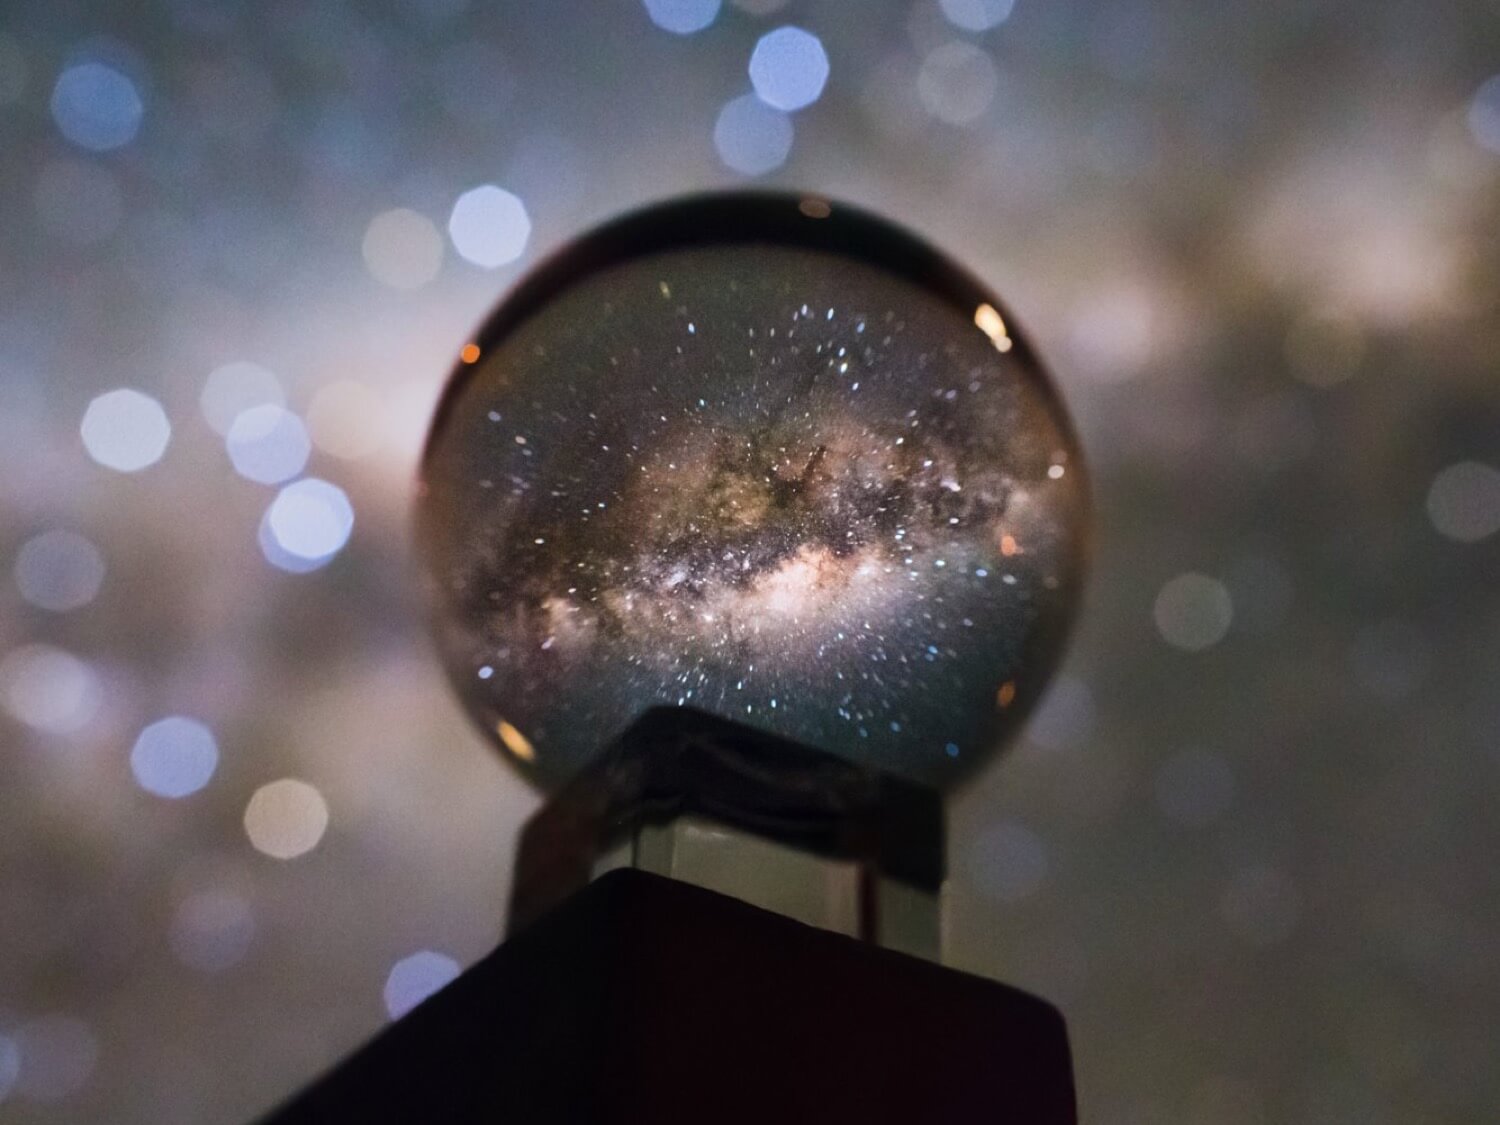 صورة مجرة درب التبانة باستخدام الكرة الكريستال تبدو مذهلة